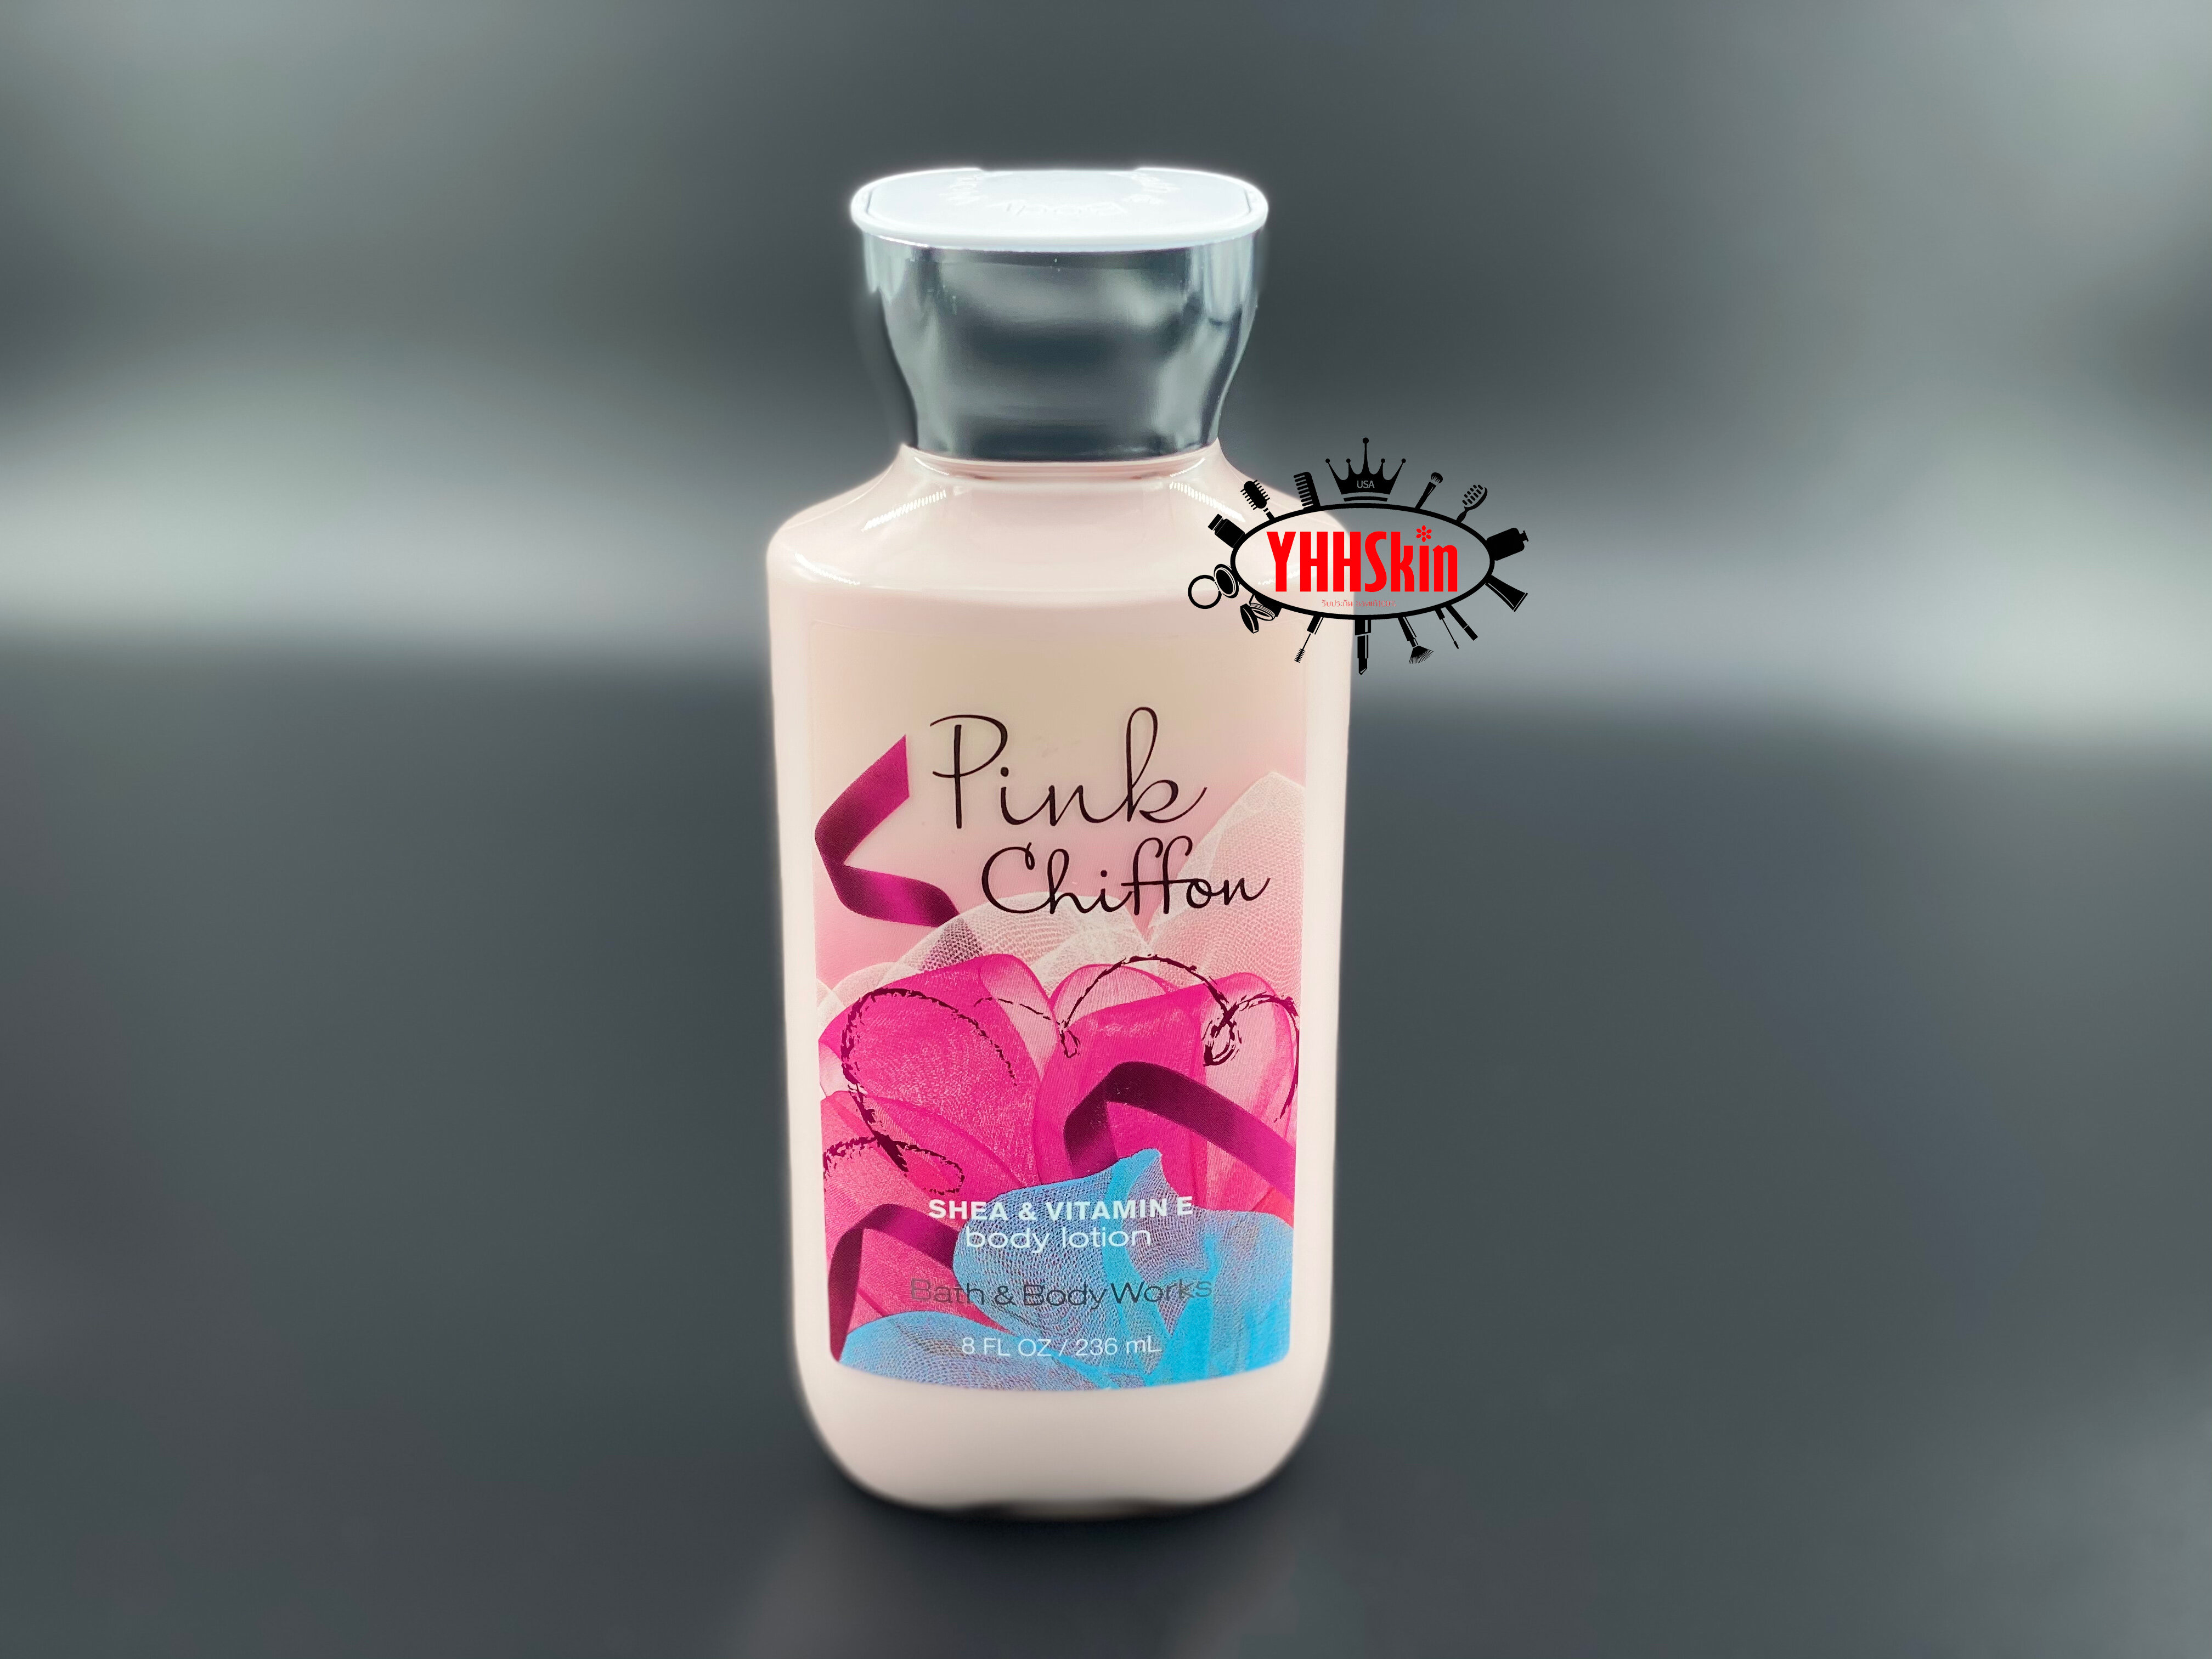 แนะนำ Bath & Body Works Body Lotion กลิ่น Pink Chiffon ขนาด 236ml